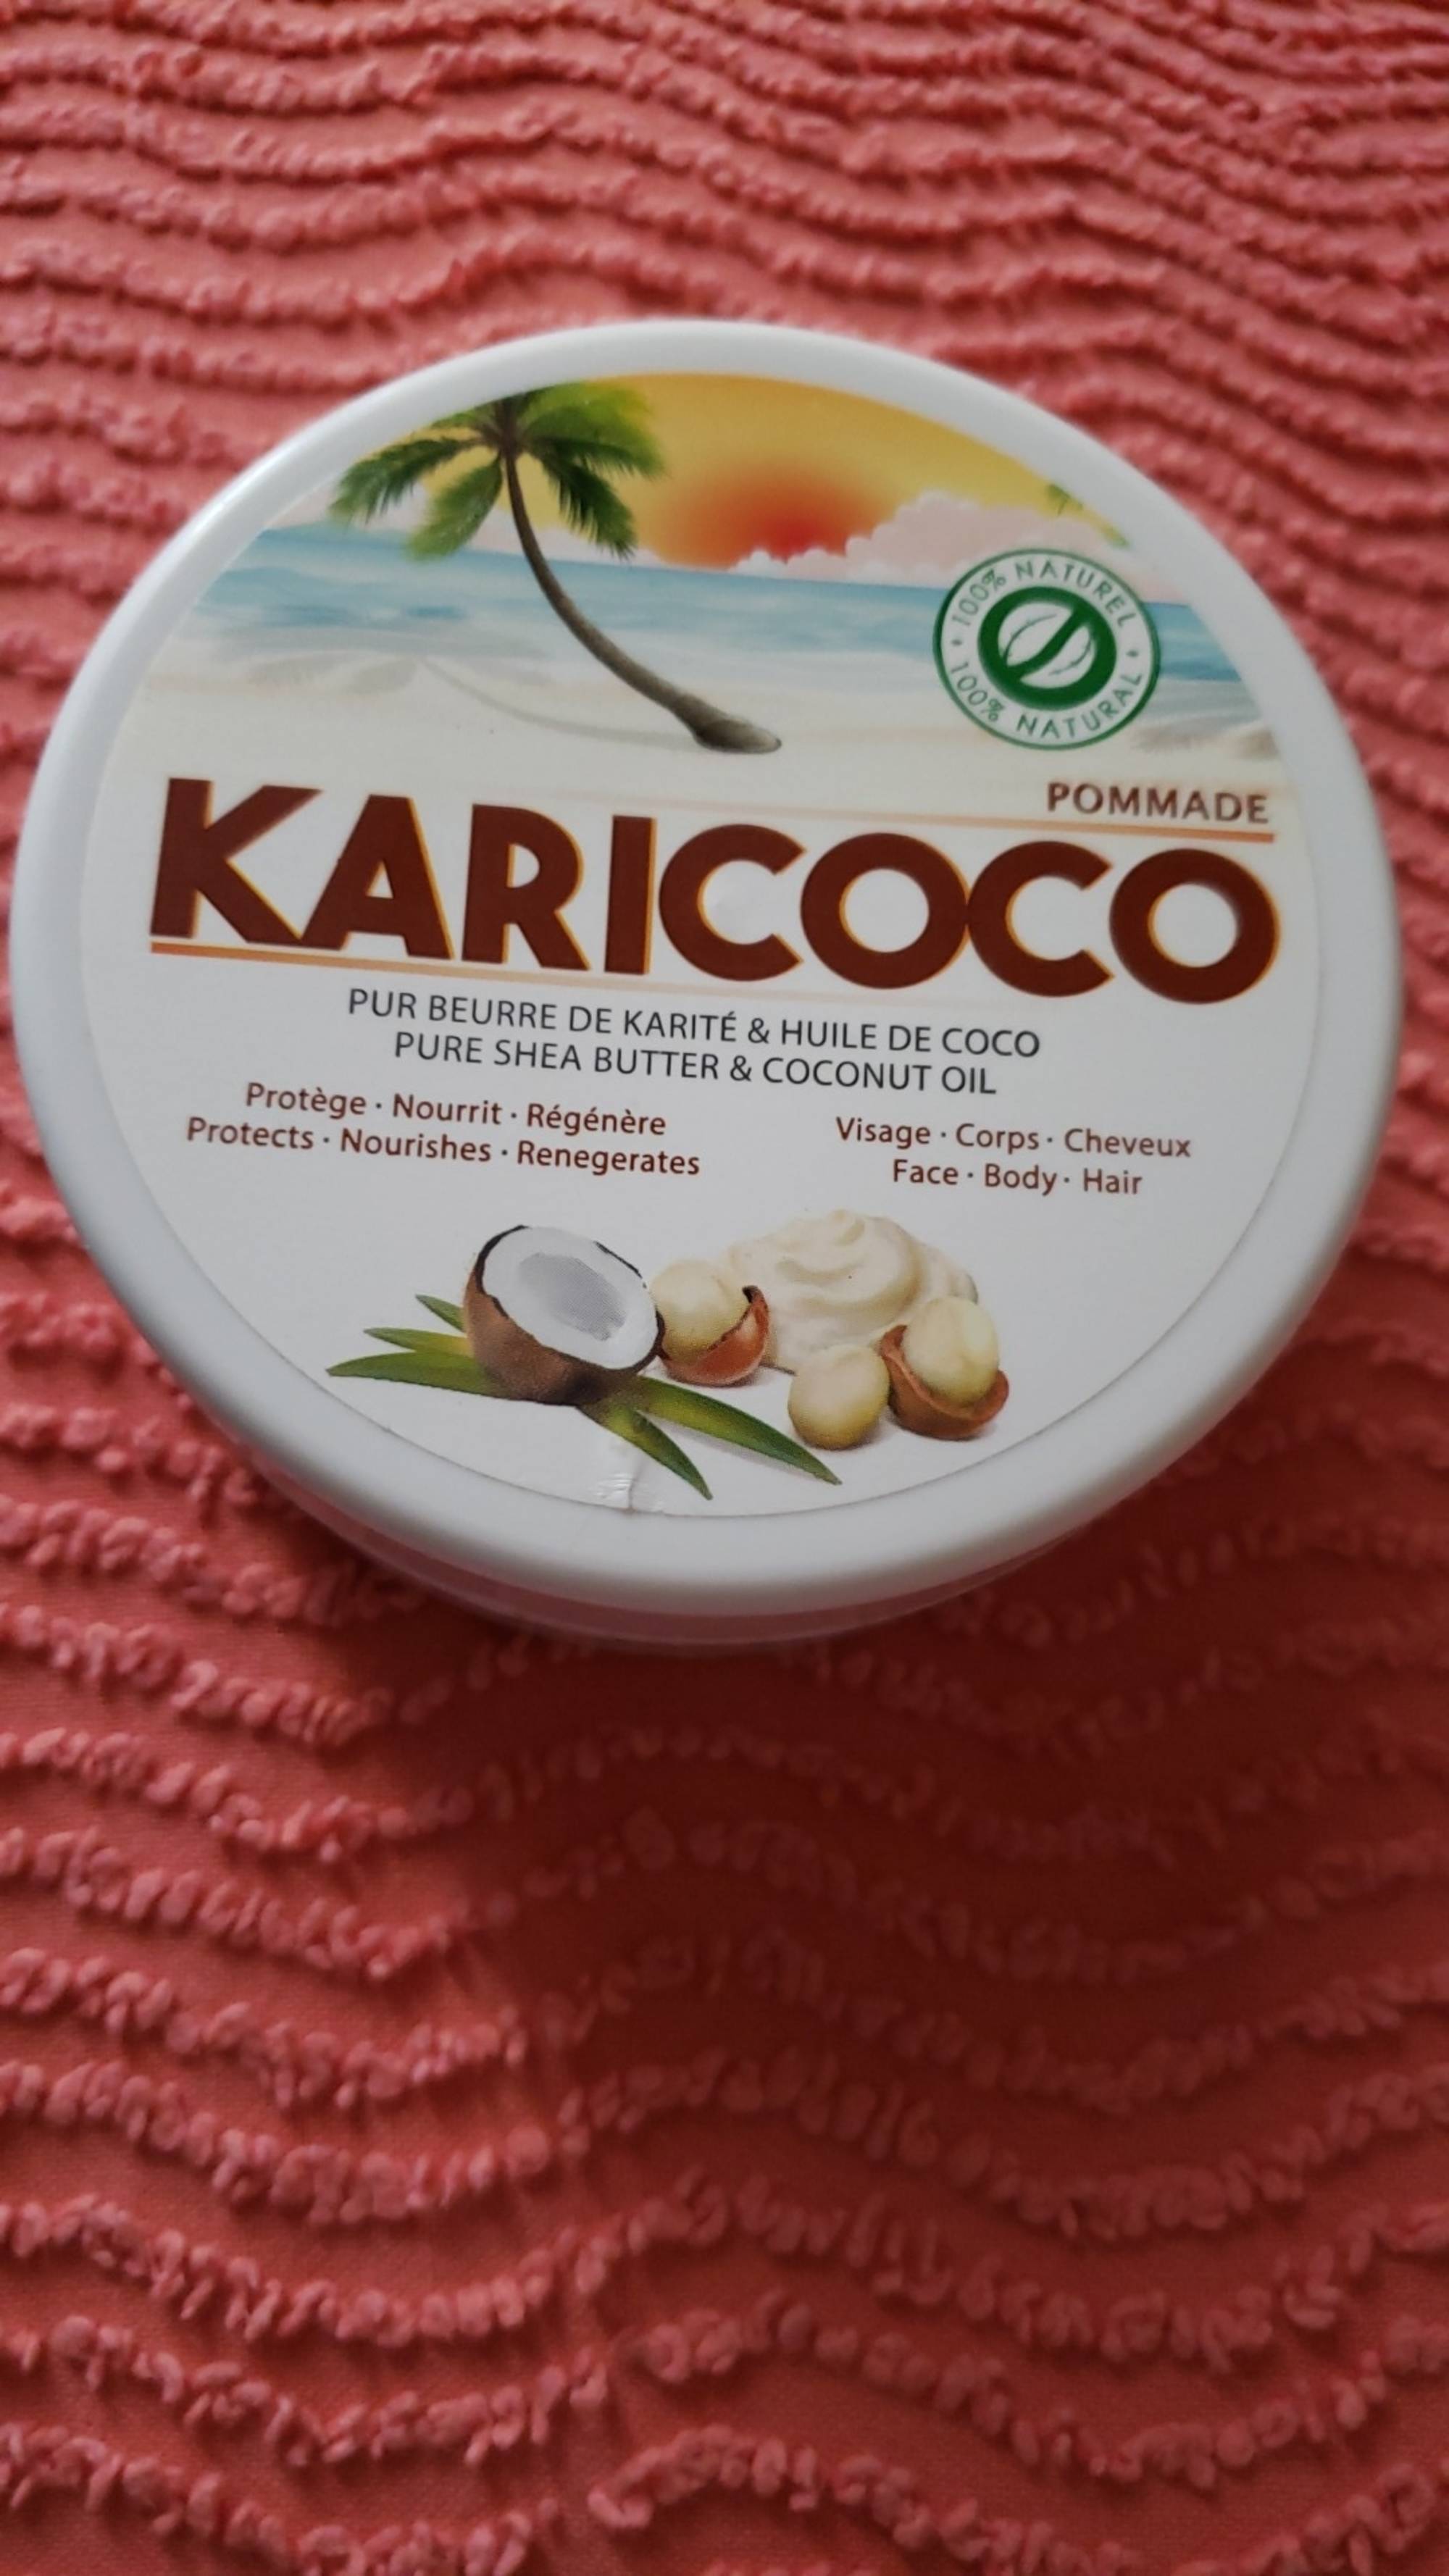 KARICOCO - Pommade pur beurre de karité & huile de coco visage